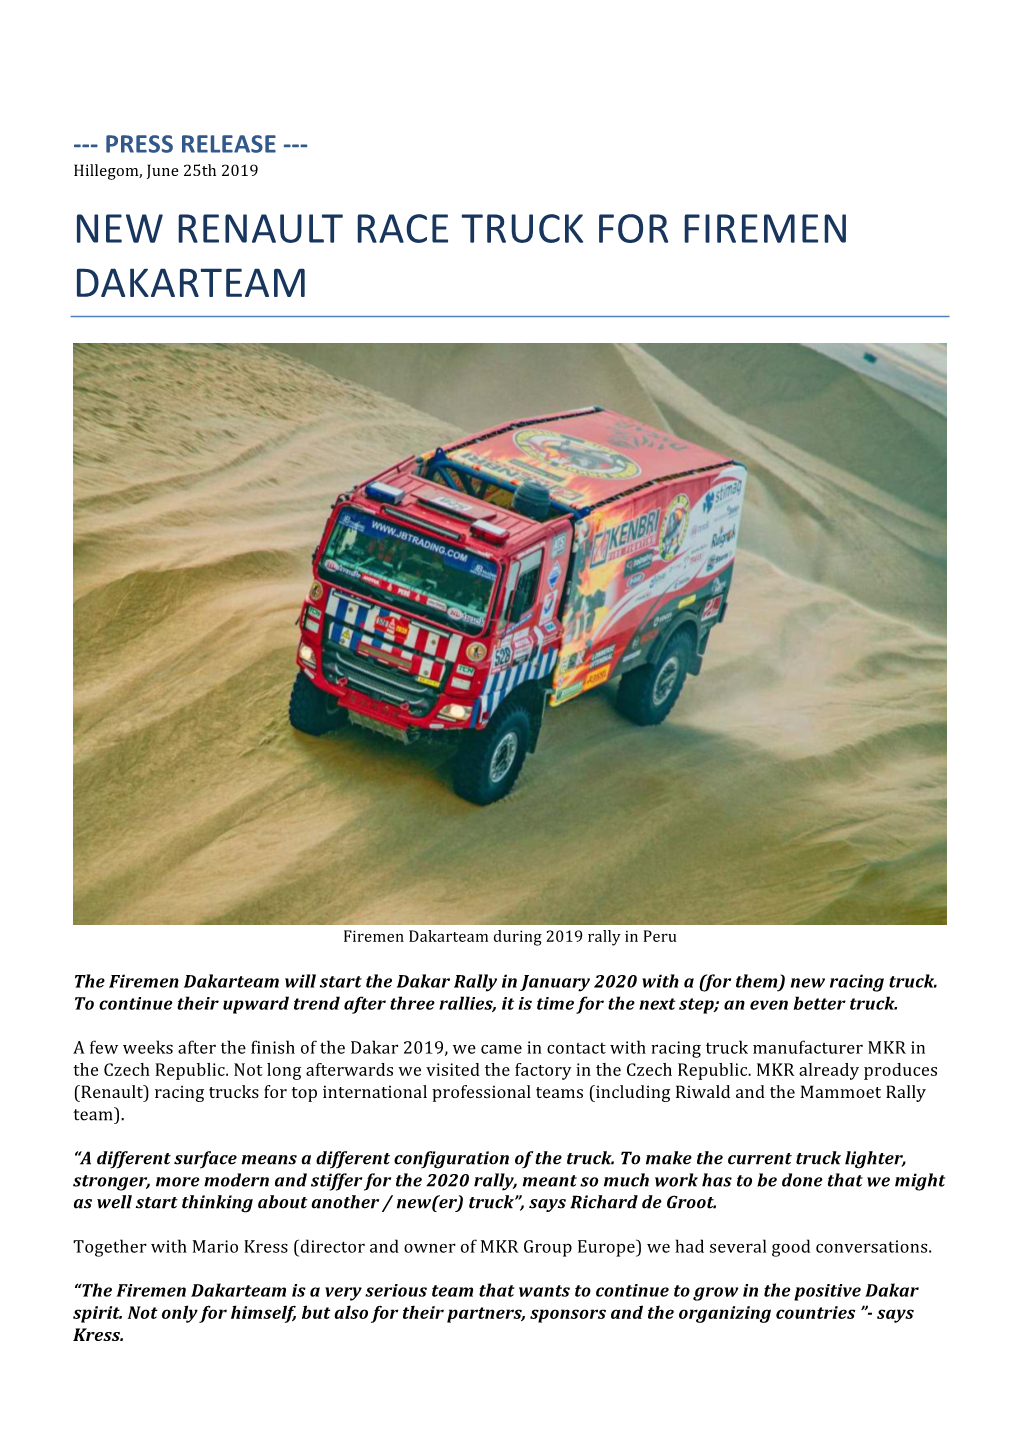 New Renault Race Truck for Firemen Dakarteam